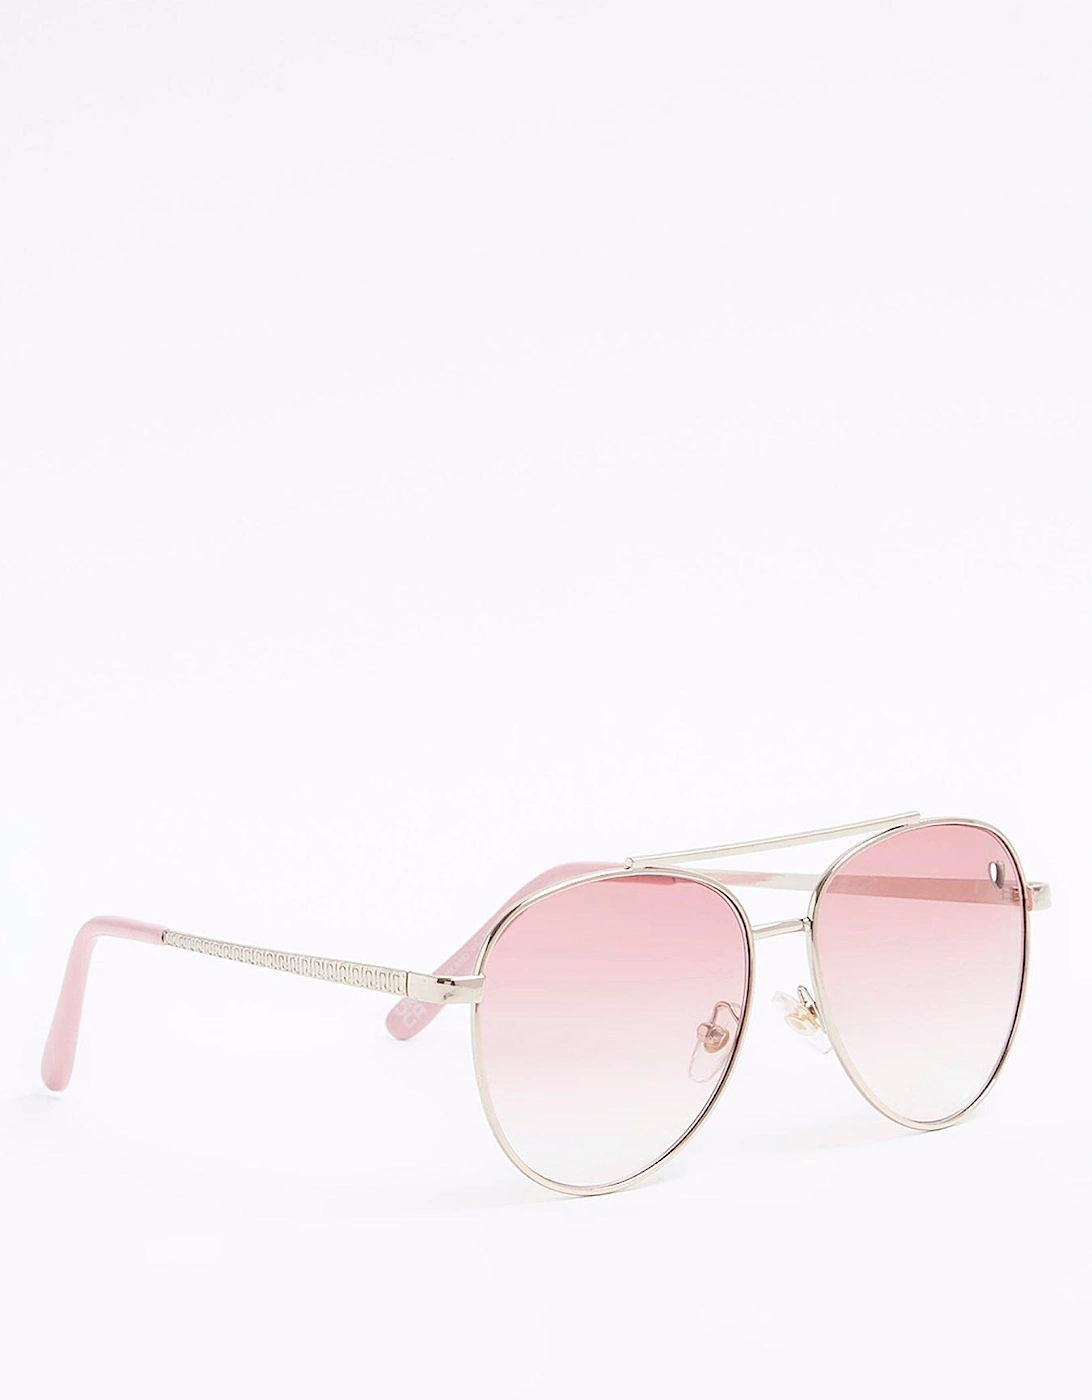 Girls Heart Aviator Sunglasses - Pink, 2 of 1